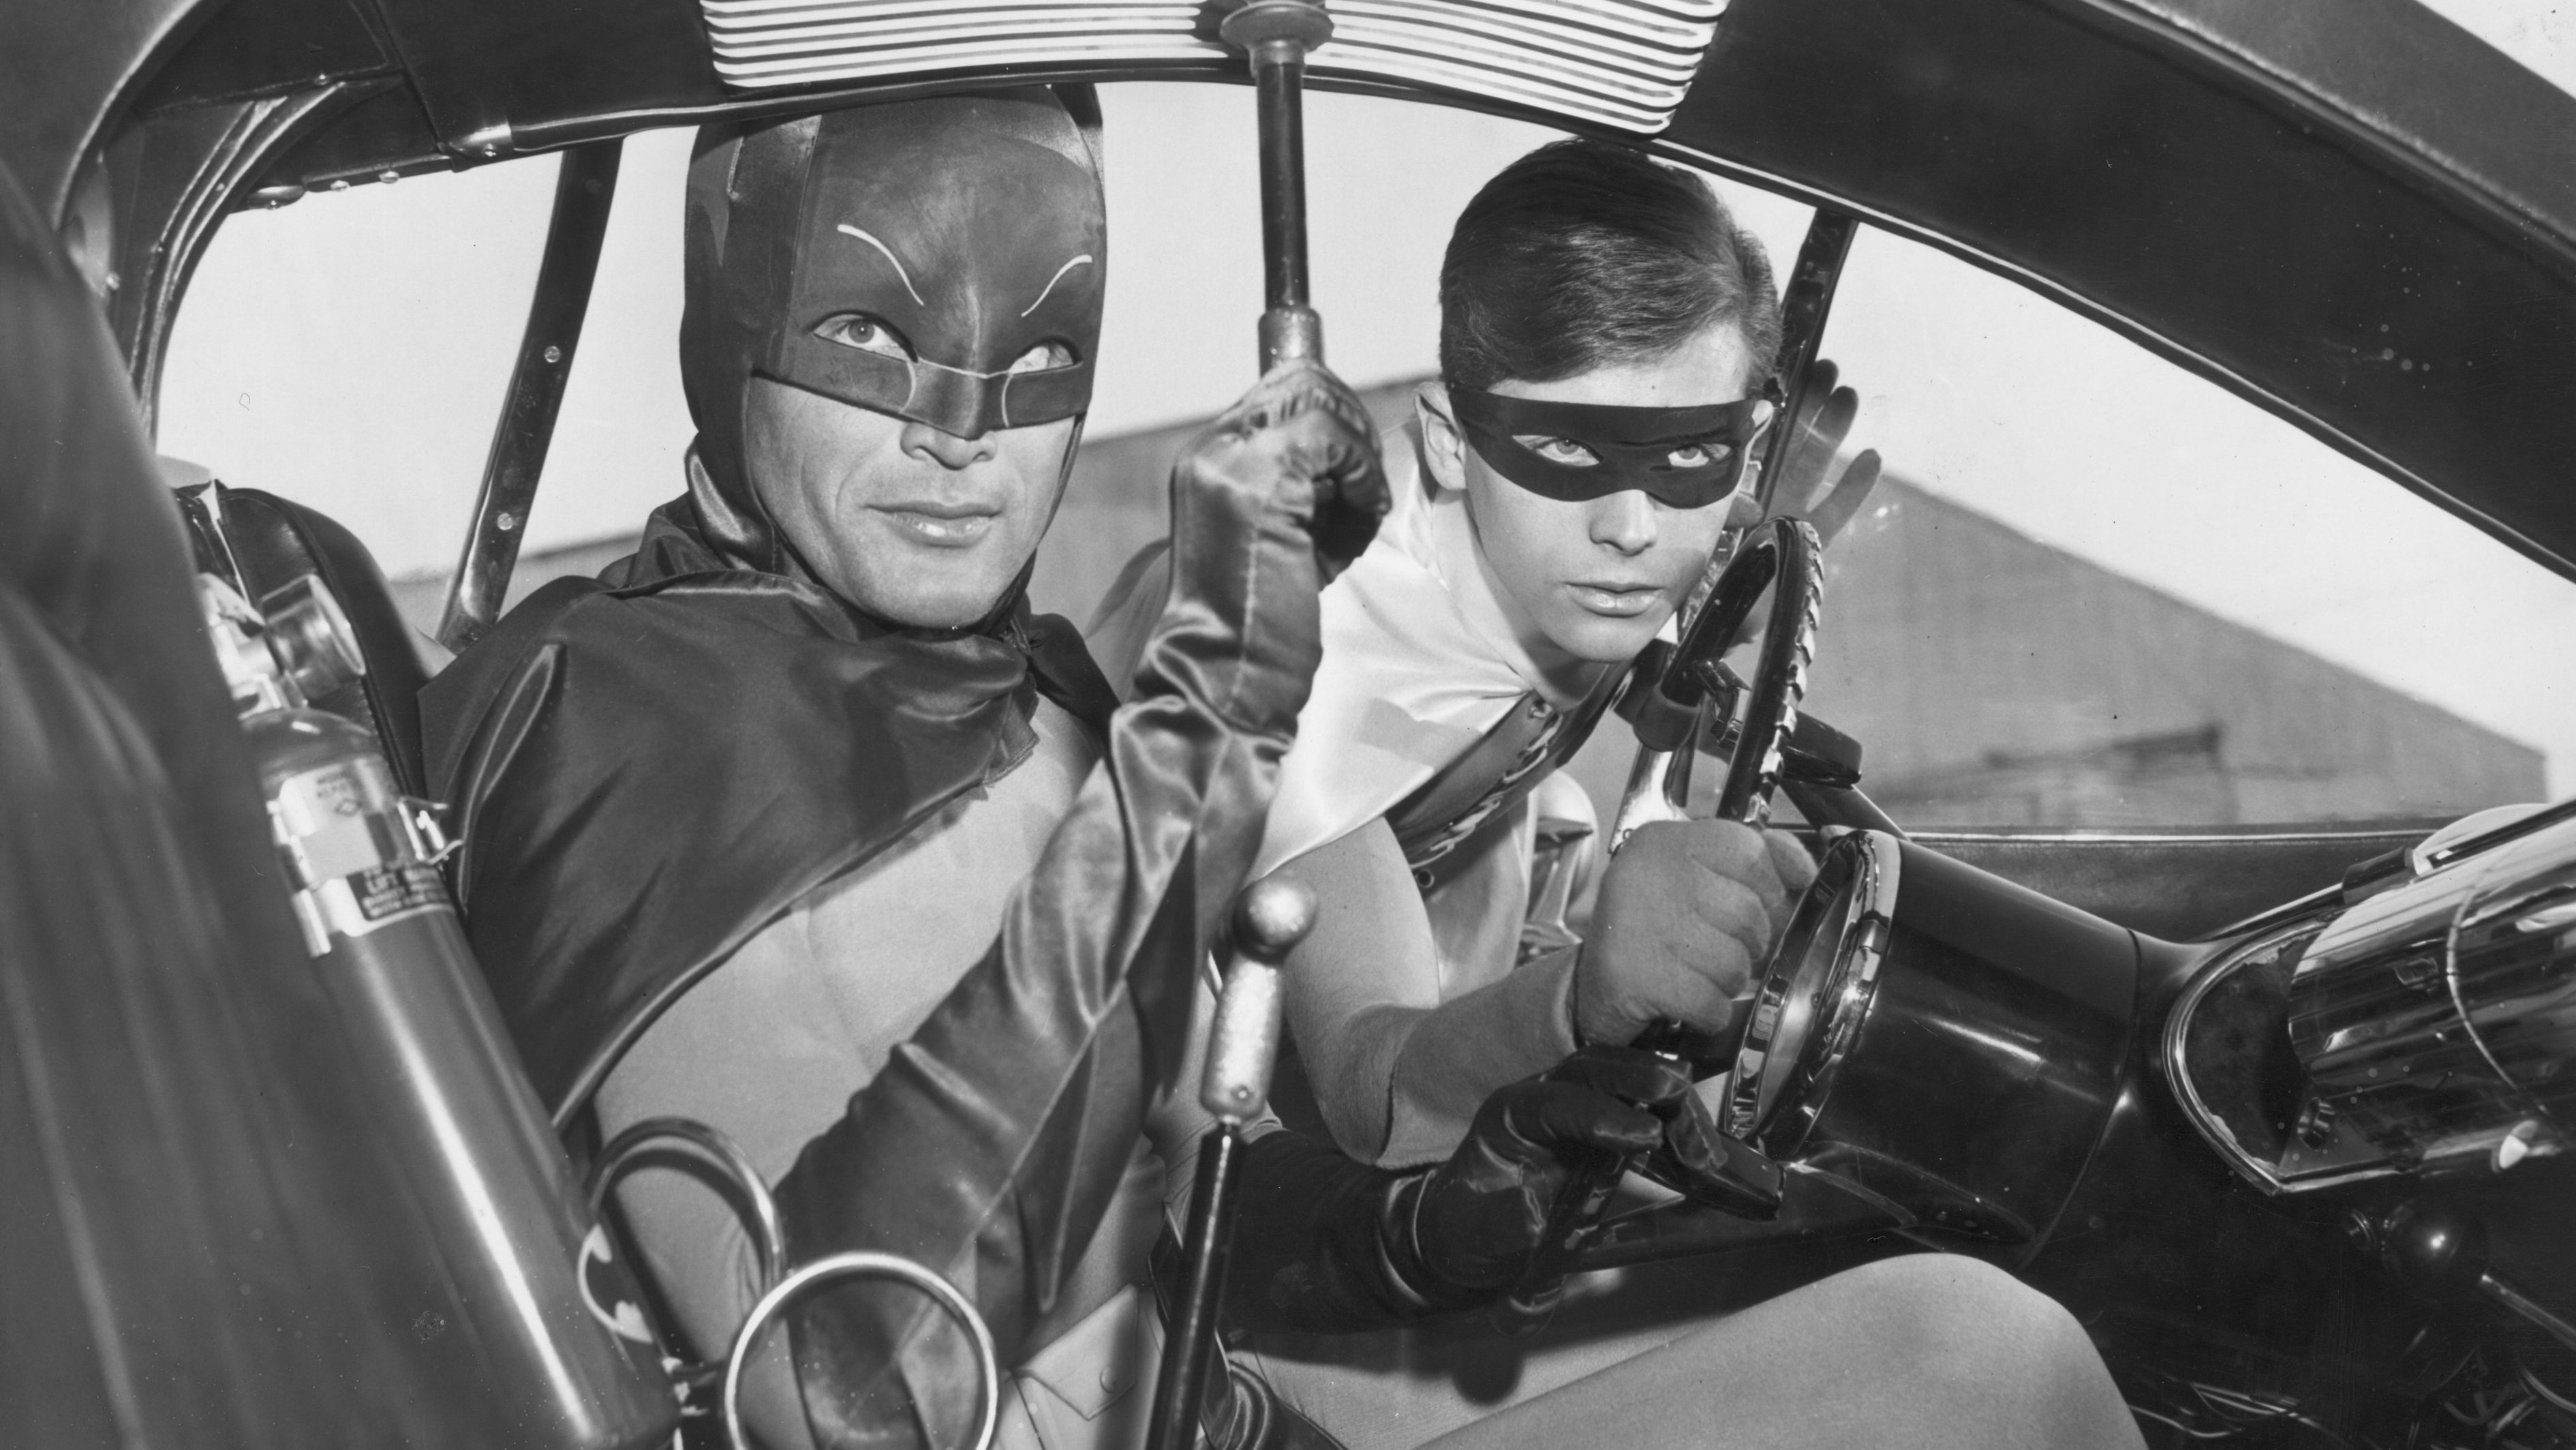 Batman' TV show marks its 50th anniversary | CNN